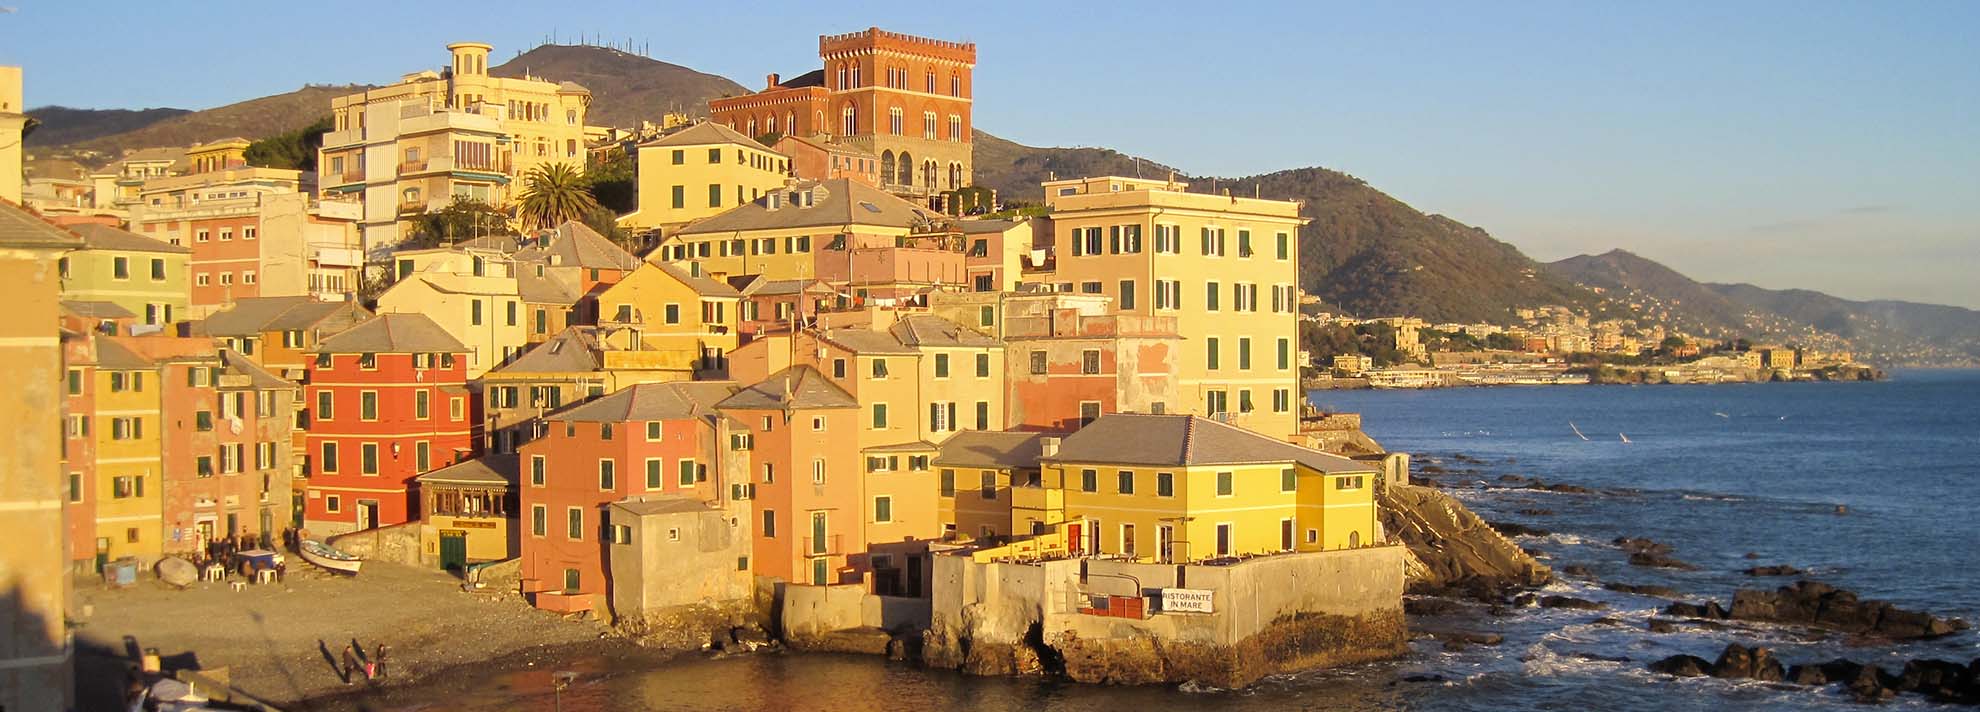 Itinerario Boccadasse: il borgo di Livia e della gatta La Mia Liguria